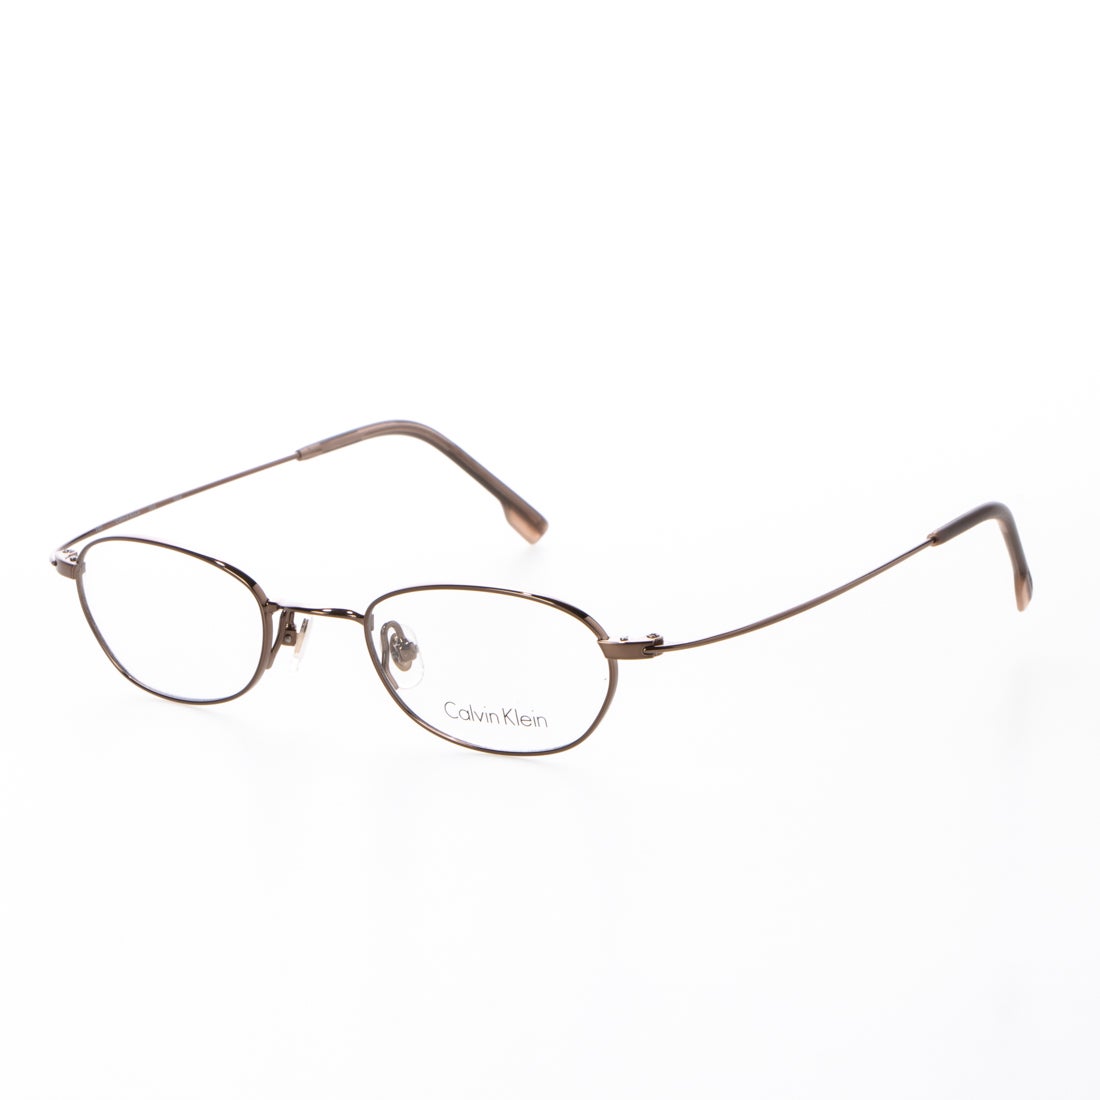 【新品】 カルバンクライン メガネ ck5999a-214 54mm calvin klein 眼鏡 メンズ Calvin Klein カルバン・クライン ウェリントン